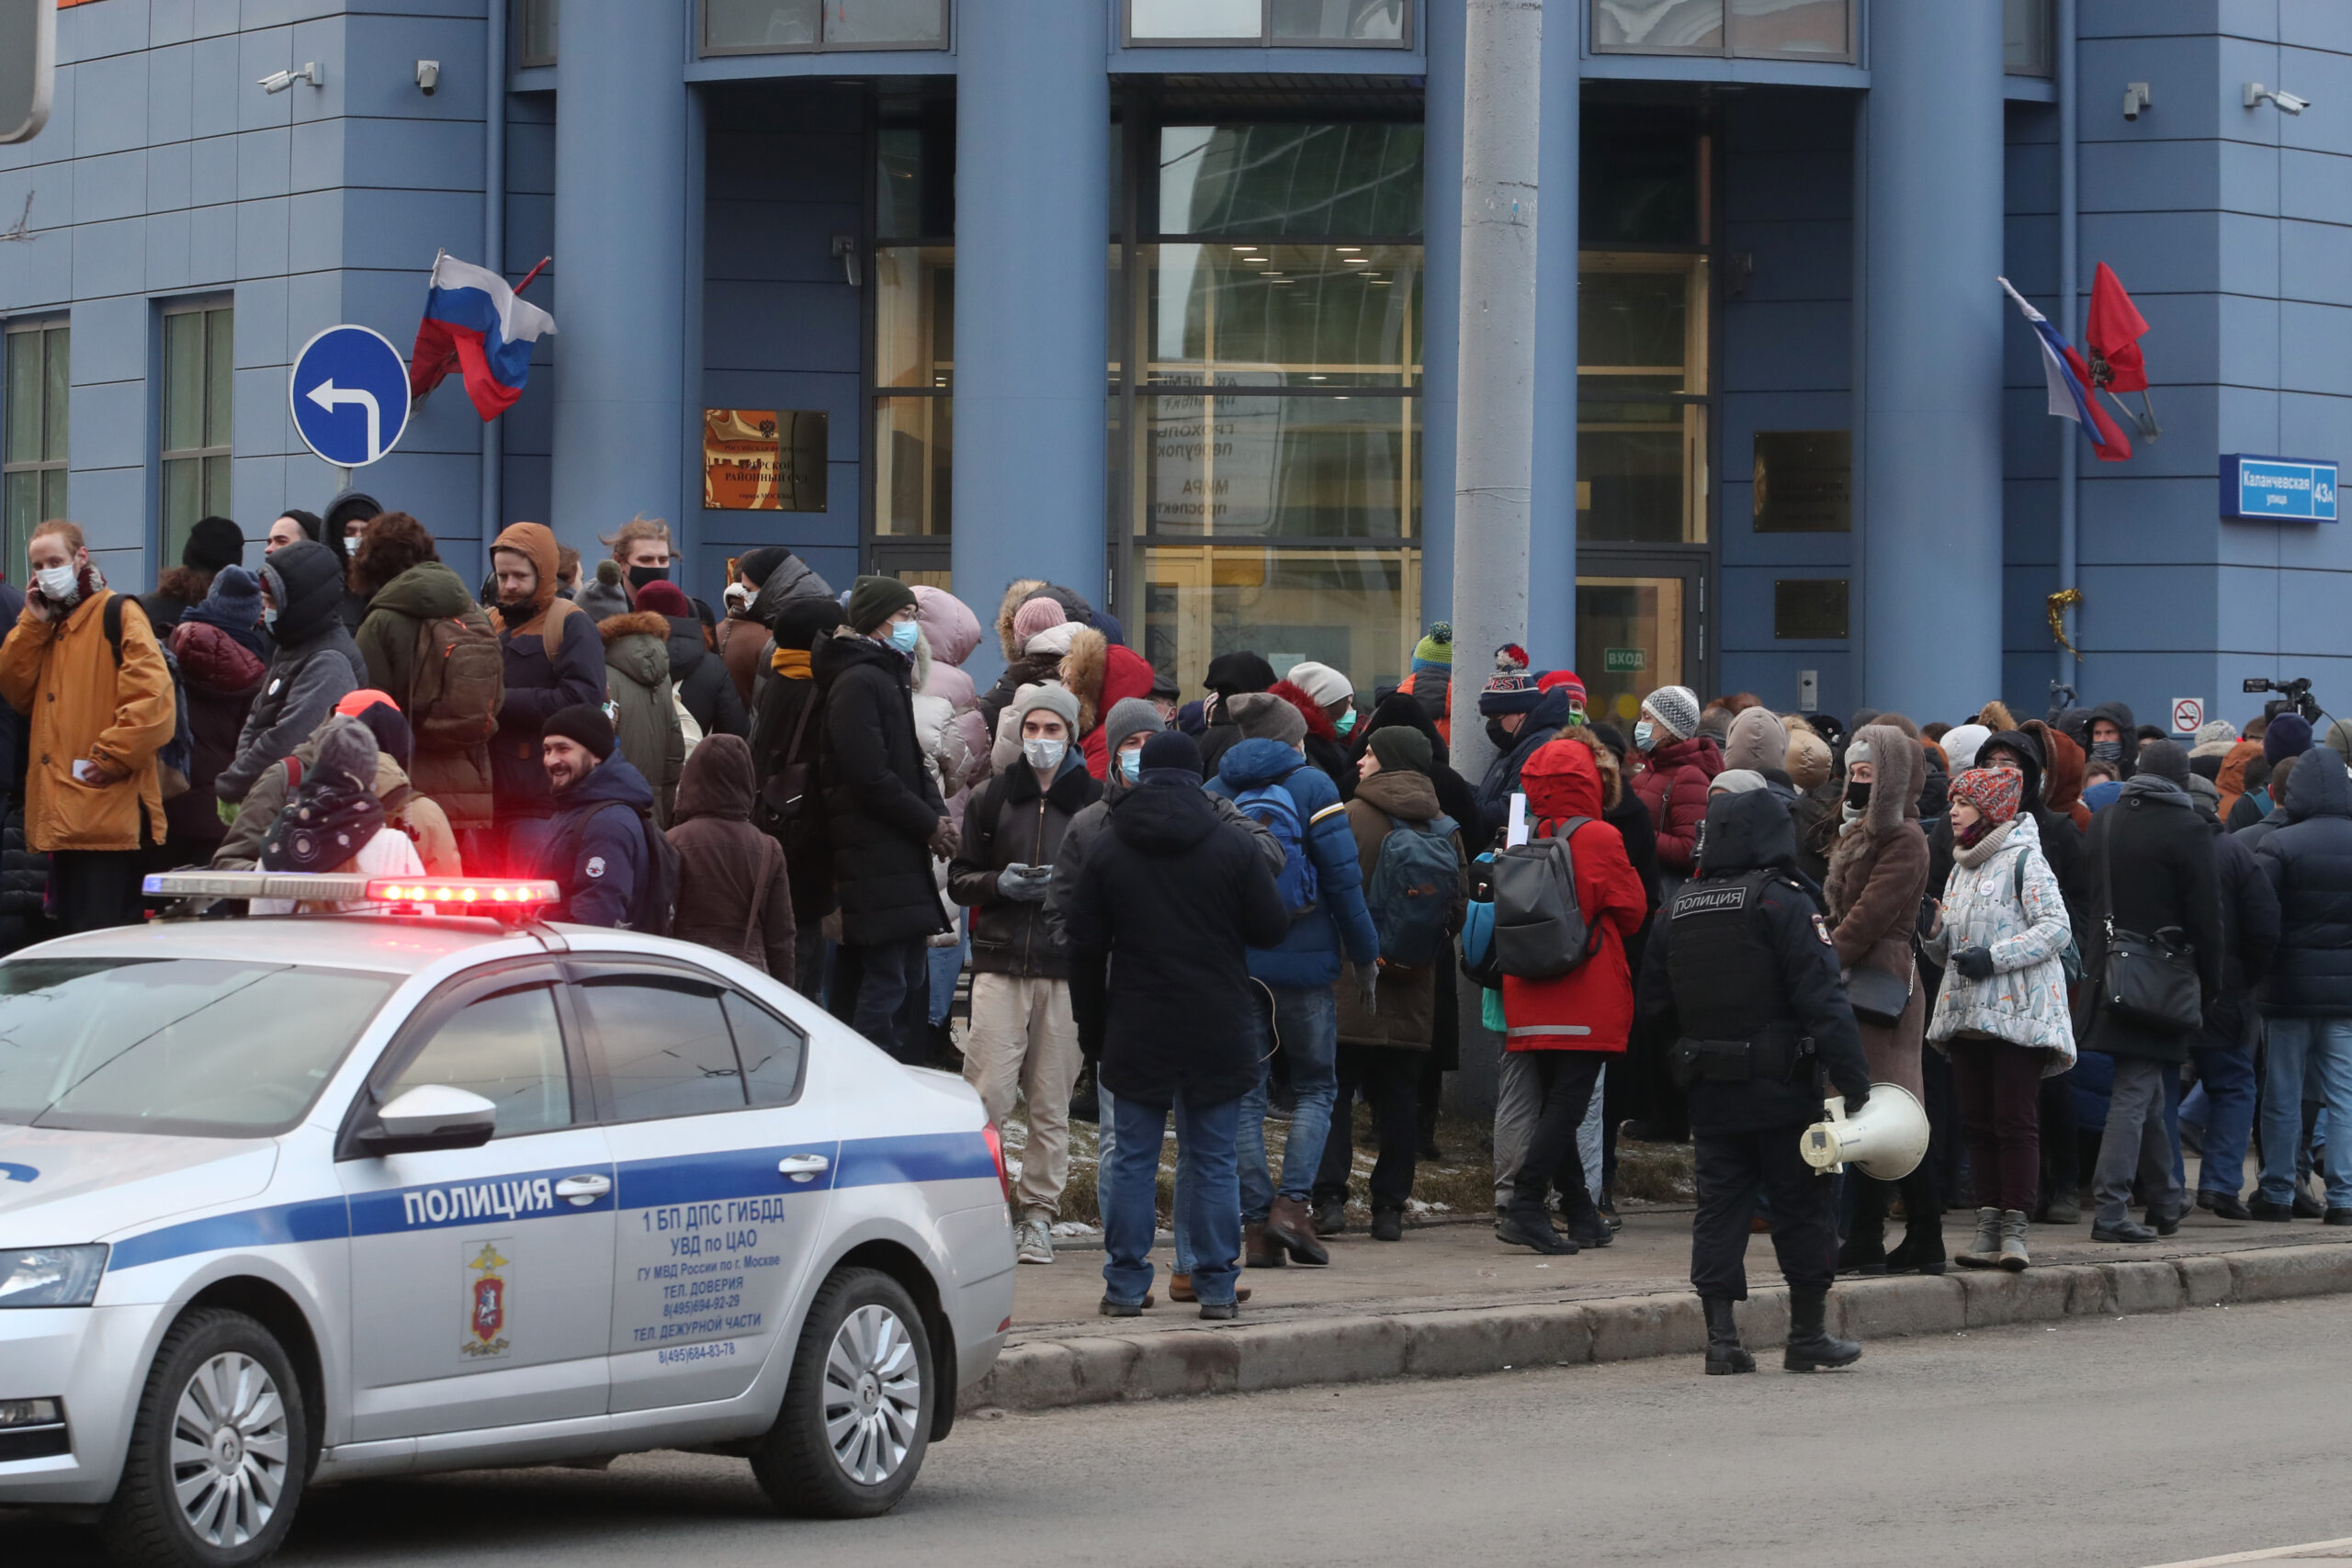 Толпа у здания суда в ожидании оглашения приговора Галяминой. Фото Sergei Karpukhin/TASS/Scanpix/Leta